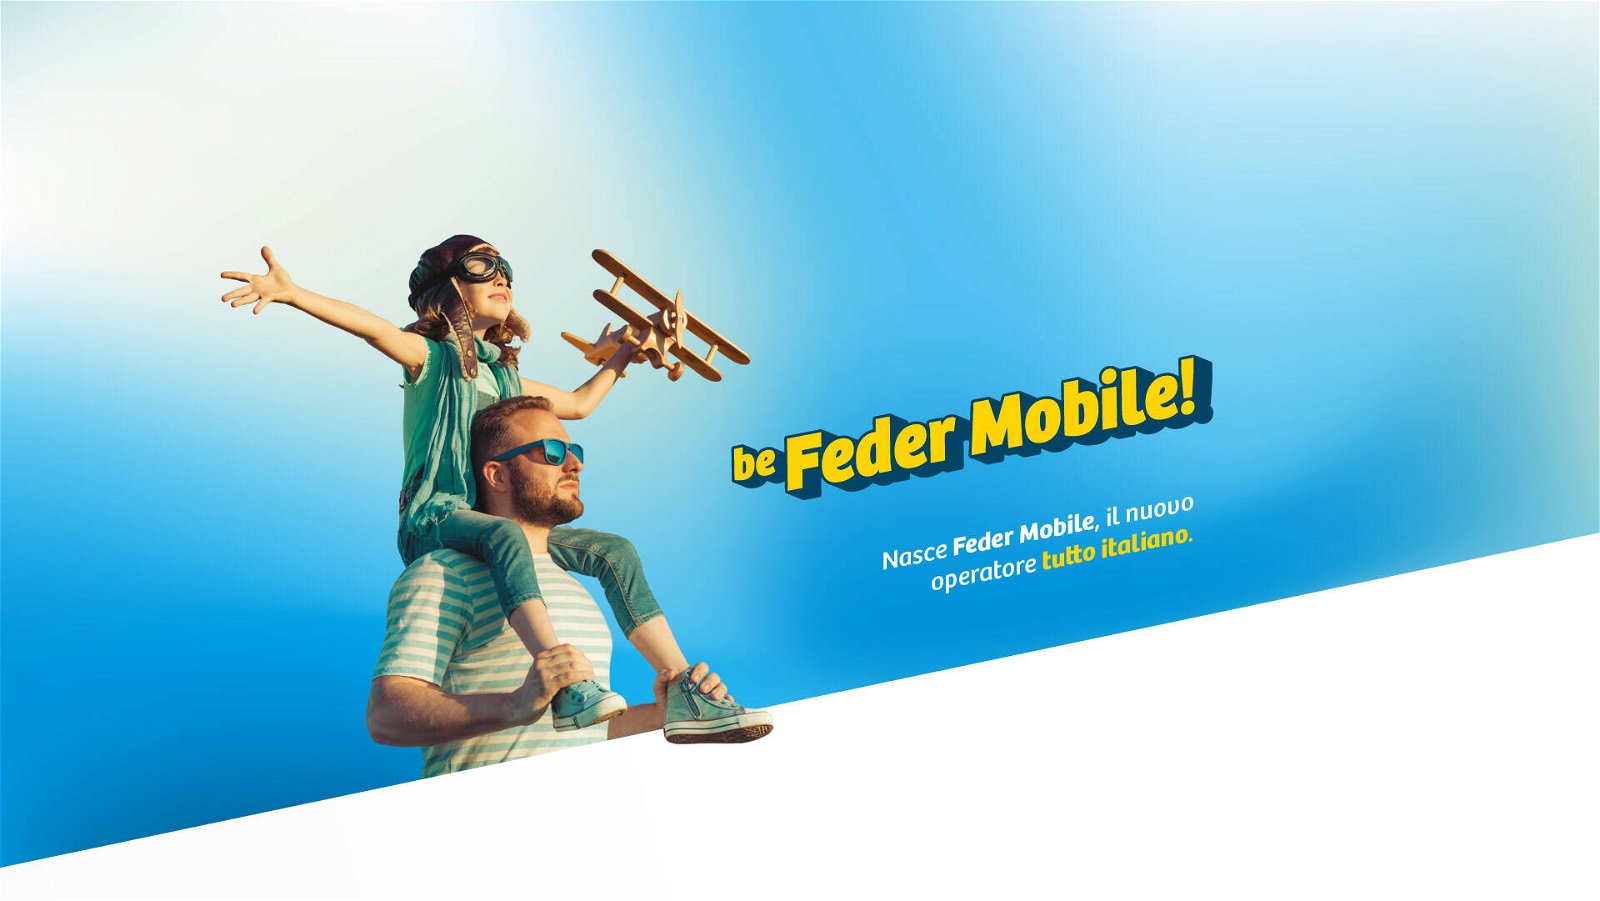 Immagine di Feder Mobile, l'operatore italiano è attivo da oggi: si parte da 3,99€/mese